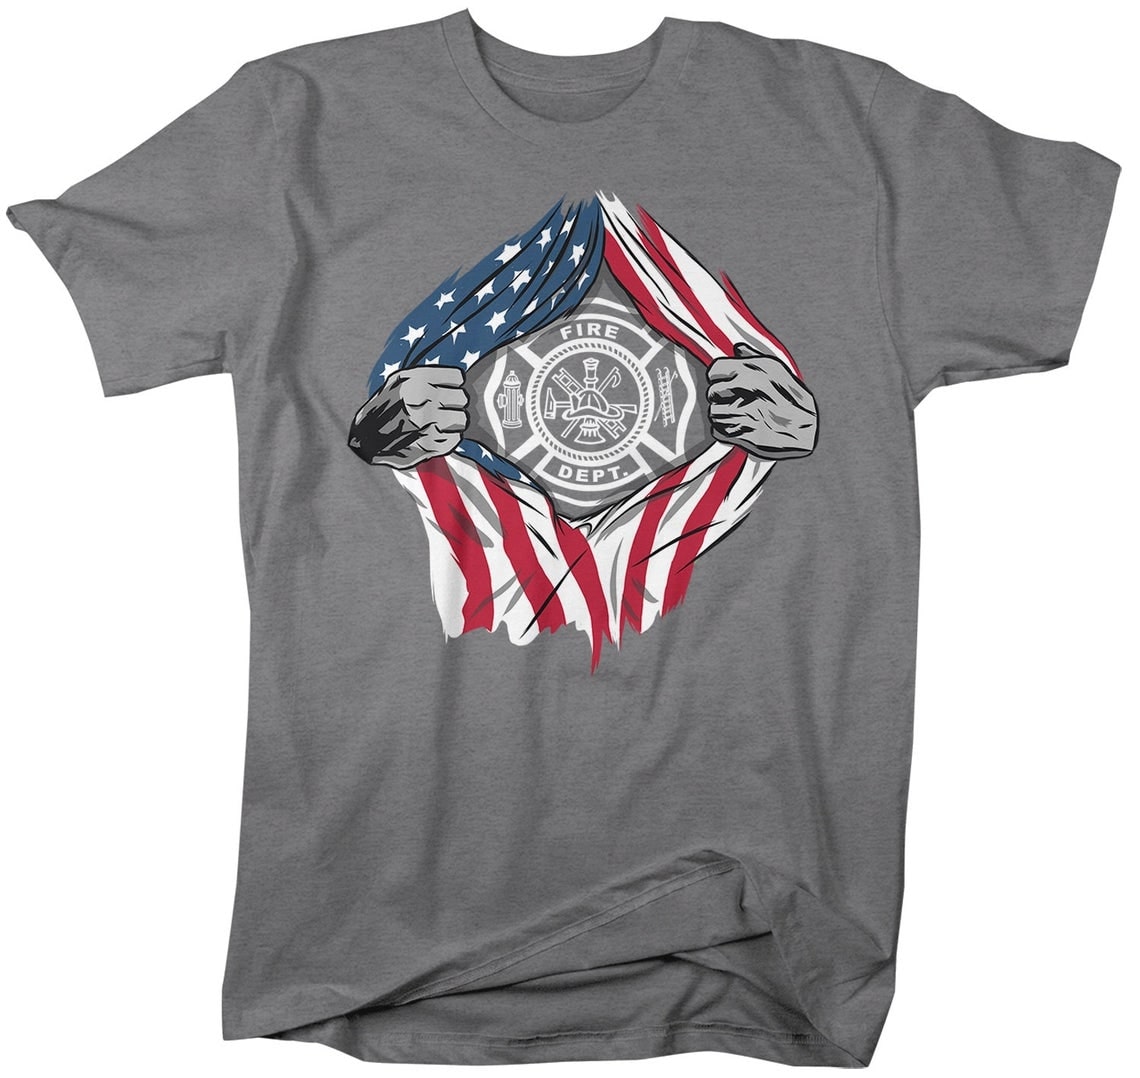 Vintage Shirt For Men Firefighter Fire Dept Tee Shirts Design Printed ...